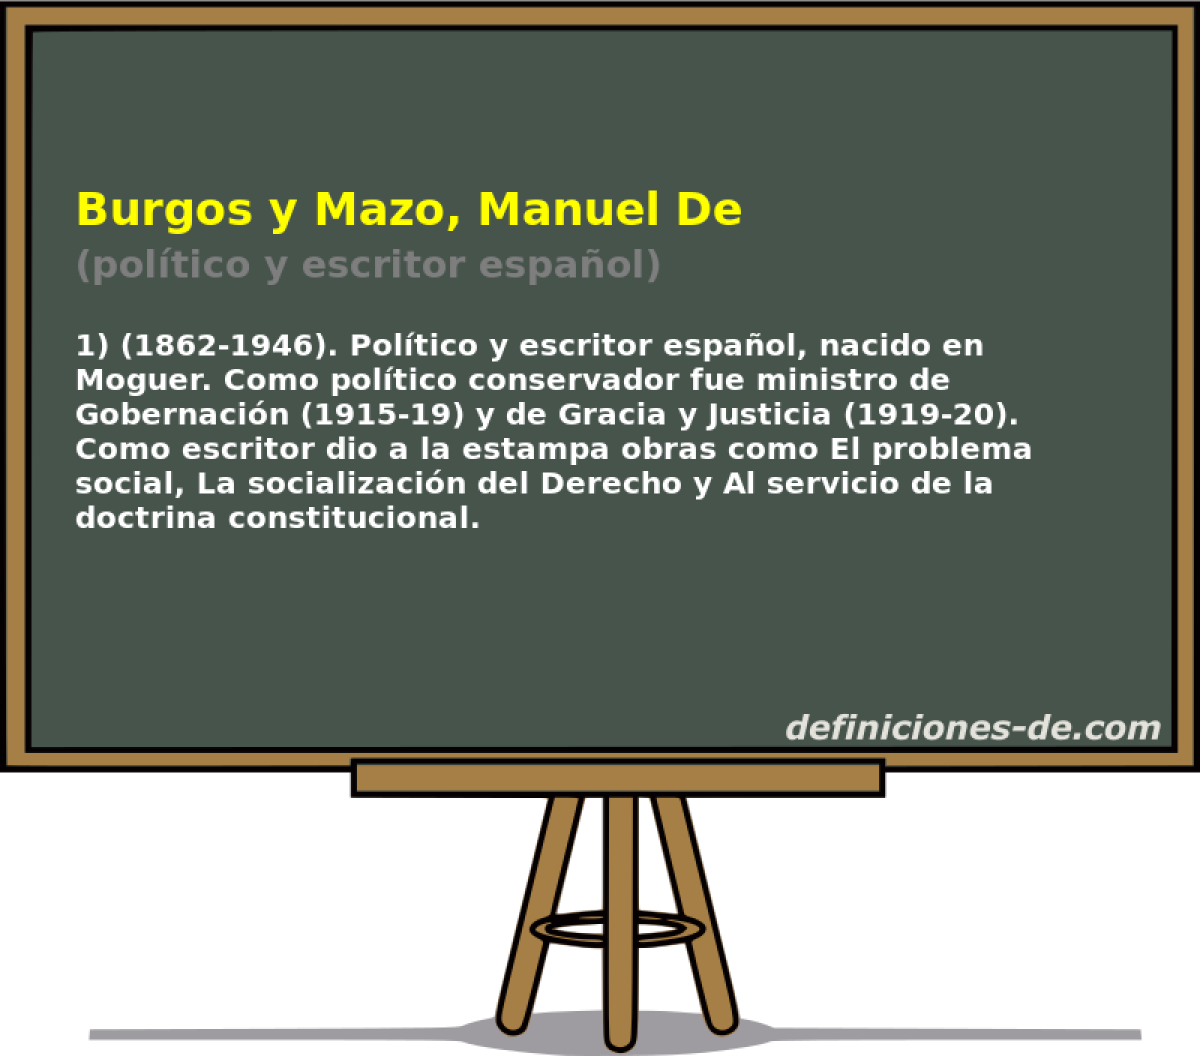 Burgos y Mazo, Manuel De (poltico y escritor espaol)